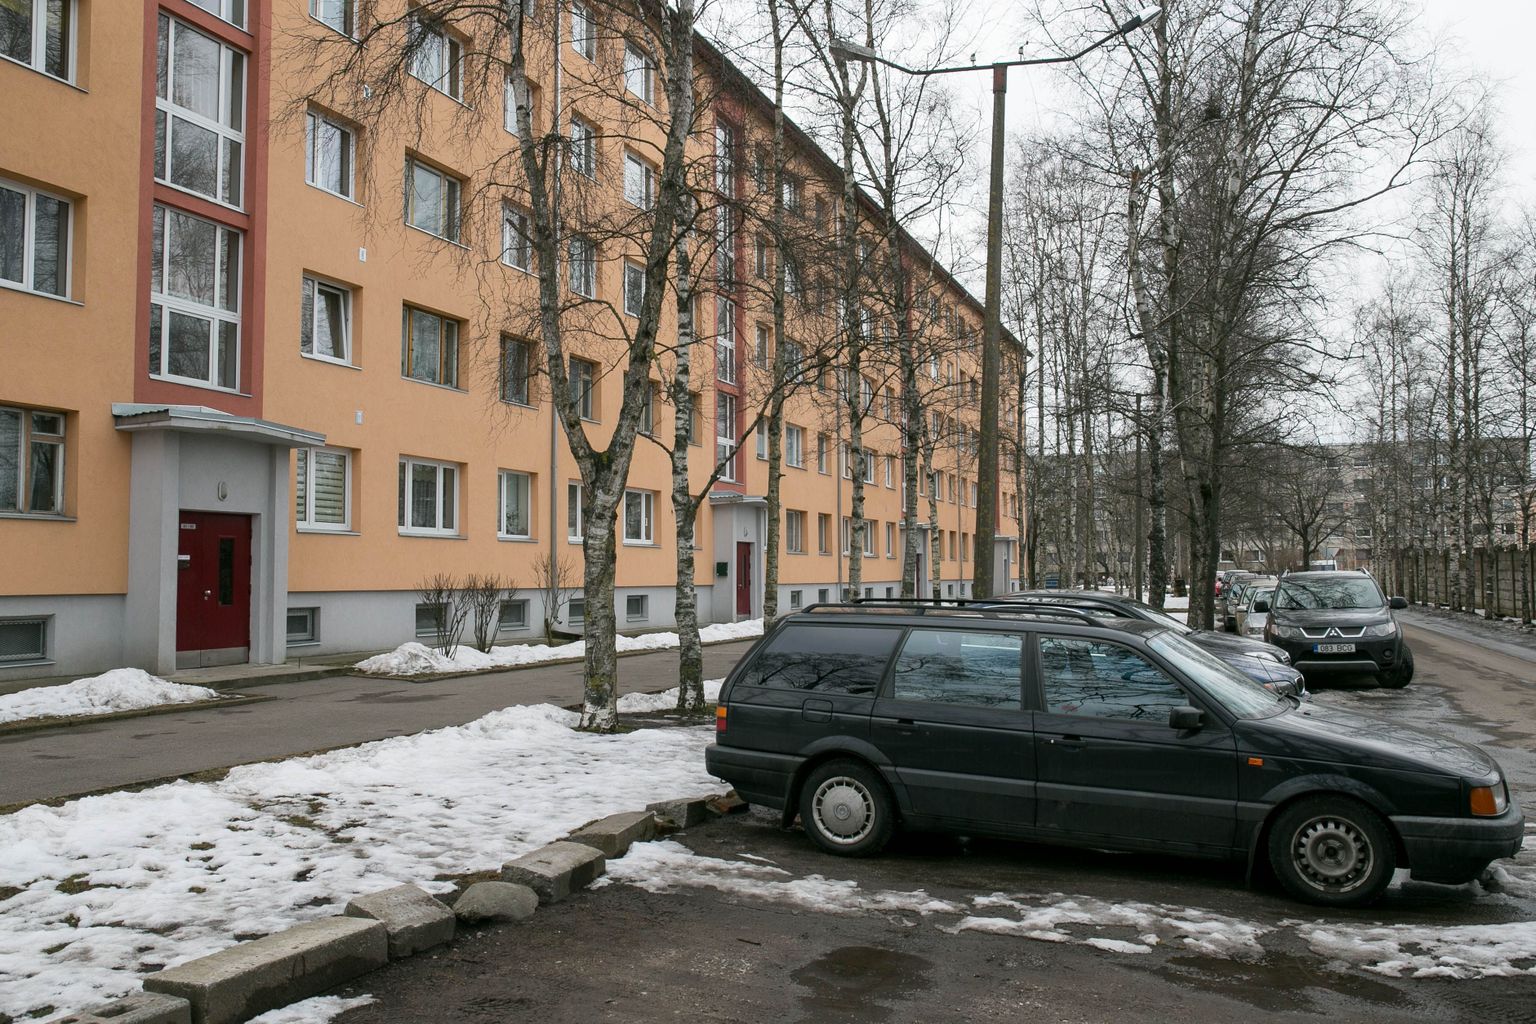 Tallinna kortermaja, kus on selle aasta jooksul arvatavalt gaasiboileri tõttu juhtunud juba kaks rasket õnnetust.